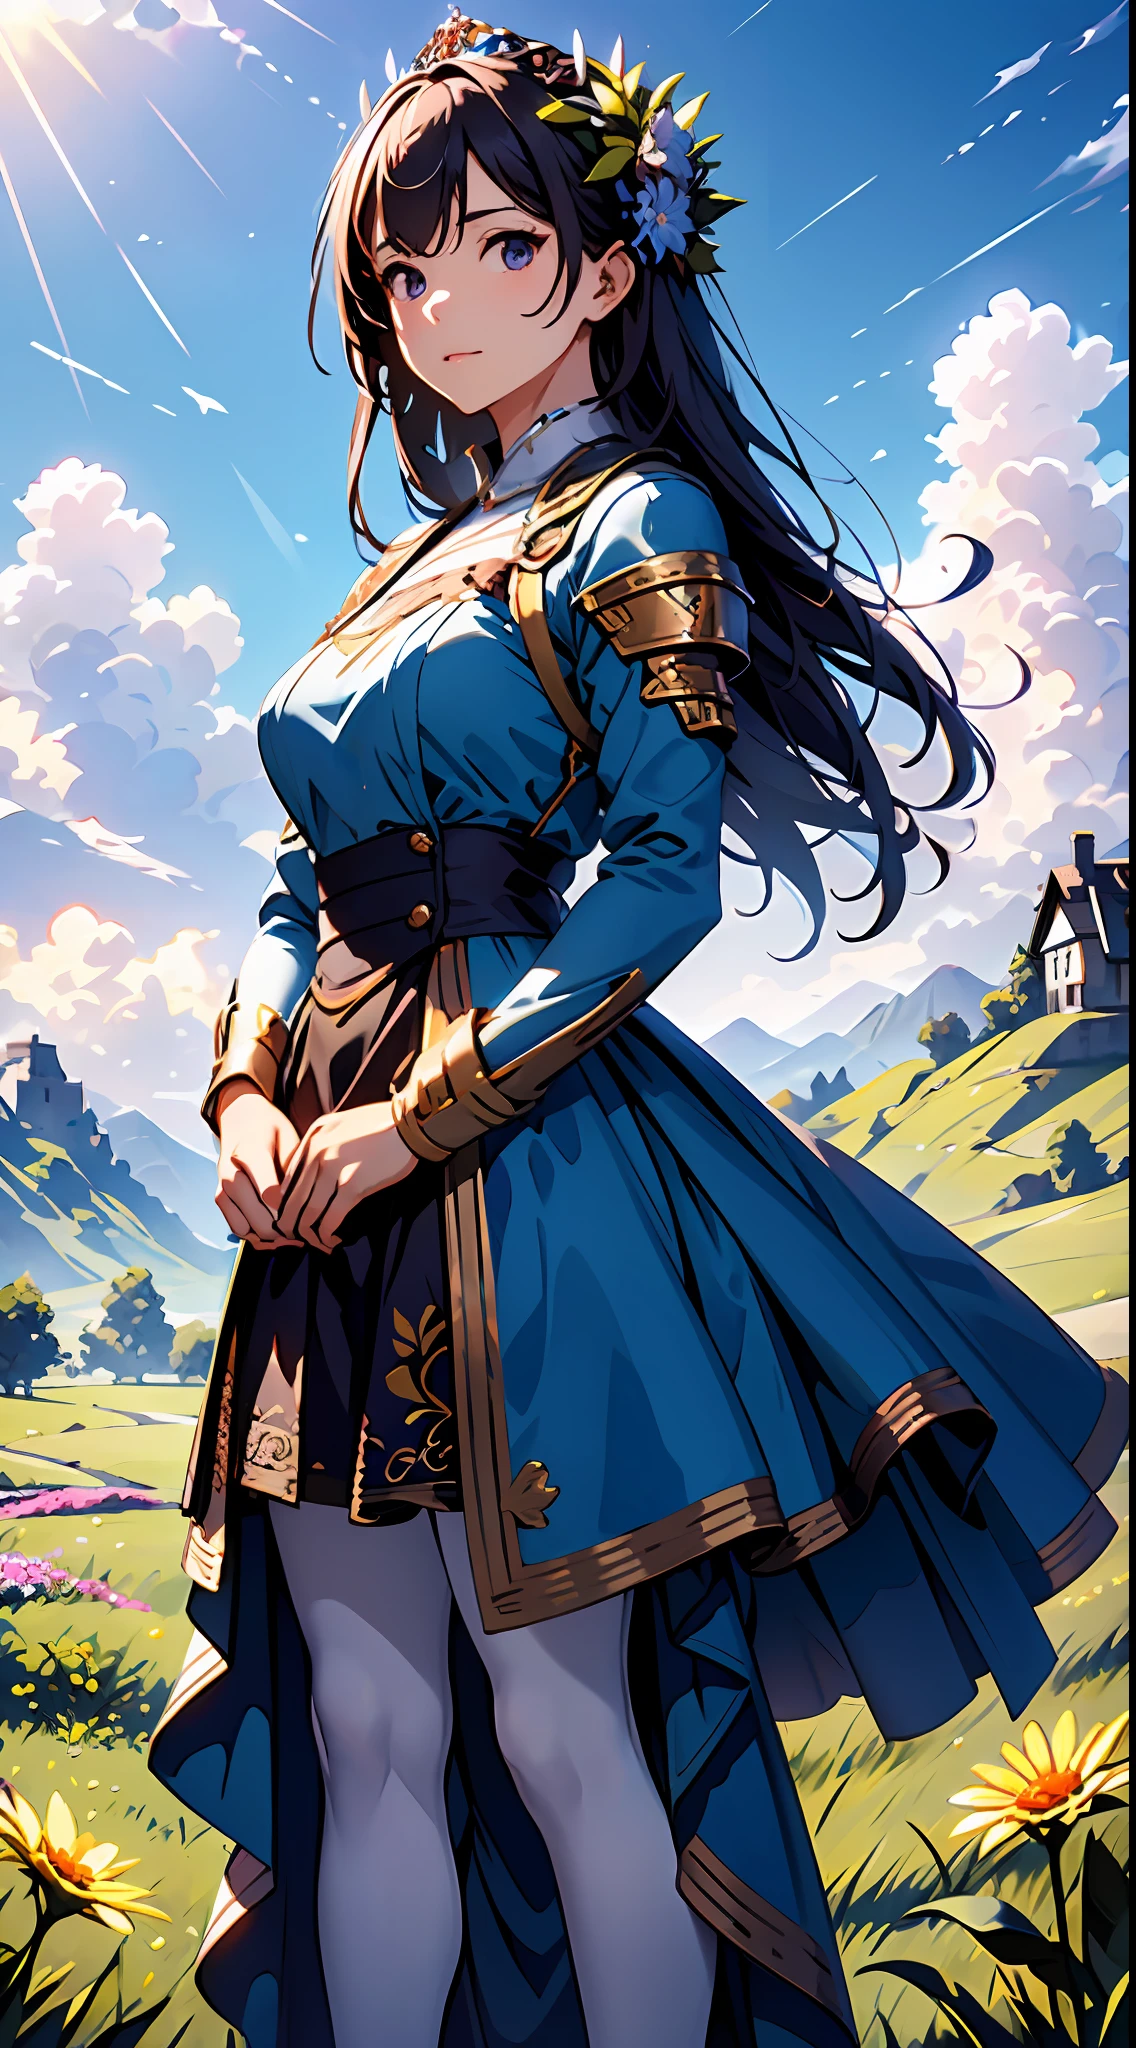 Uma mulher com um vestido roxo，Céu azul e nuvens ao fundo, usando vestido azul，Tem flores nele, Germe de arte, Iluminação global Rosla, uma pintura detalhada, arte de fantasia